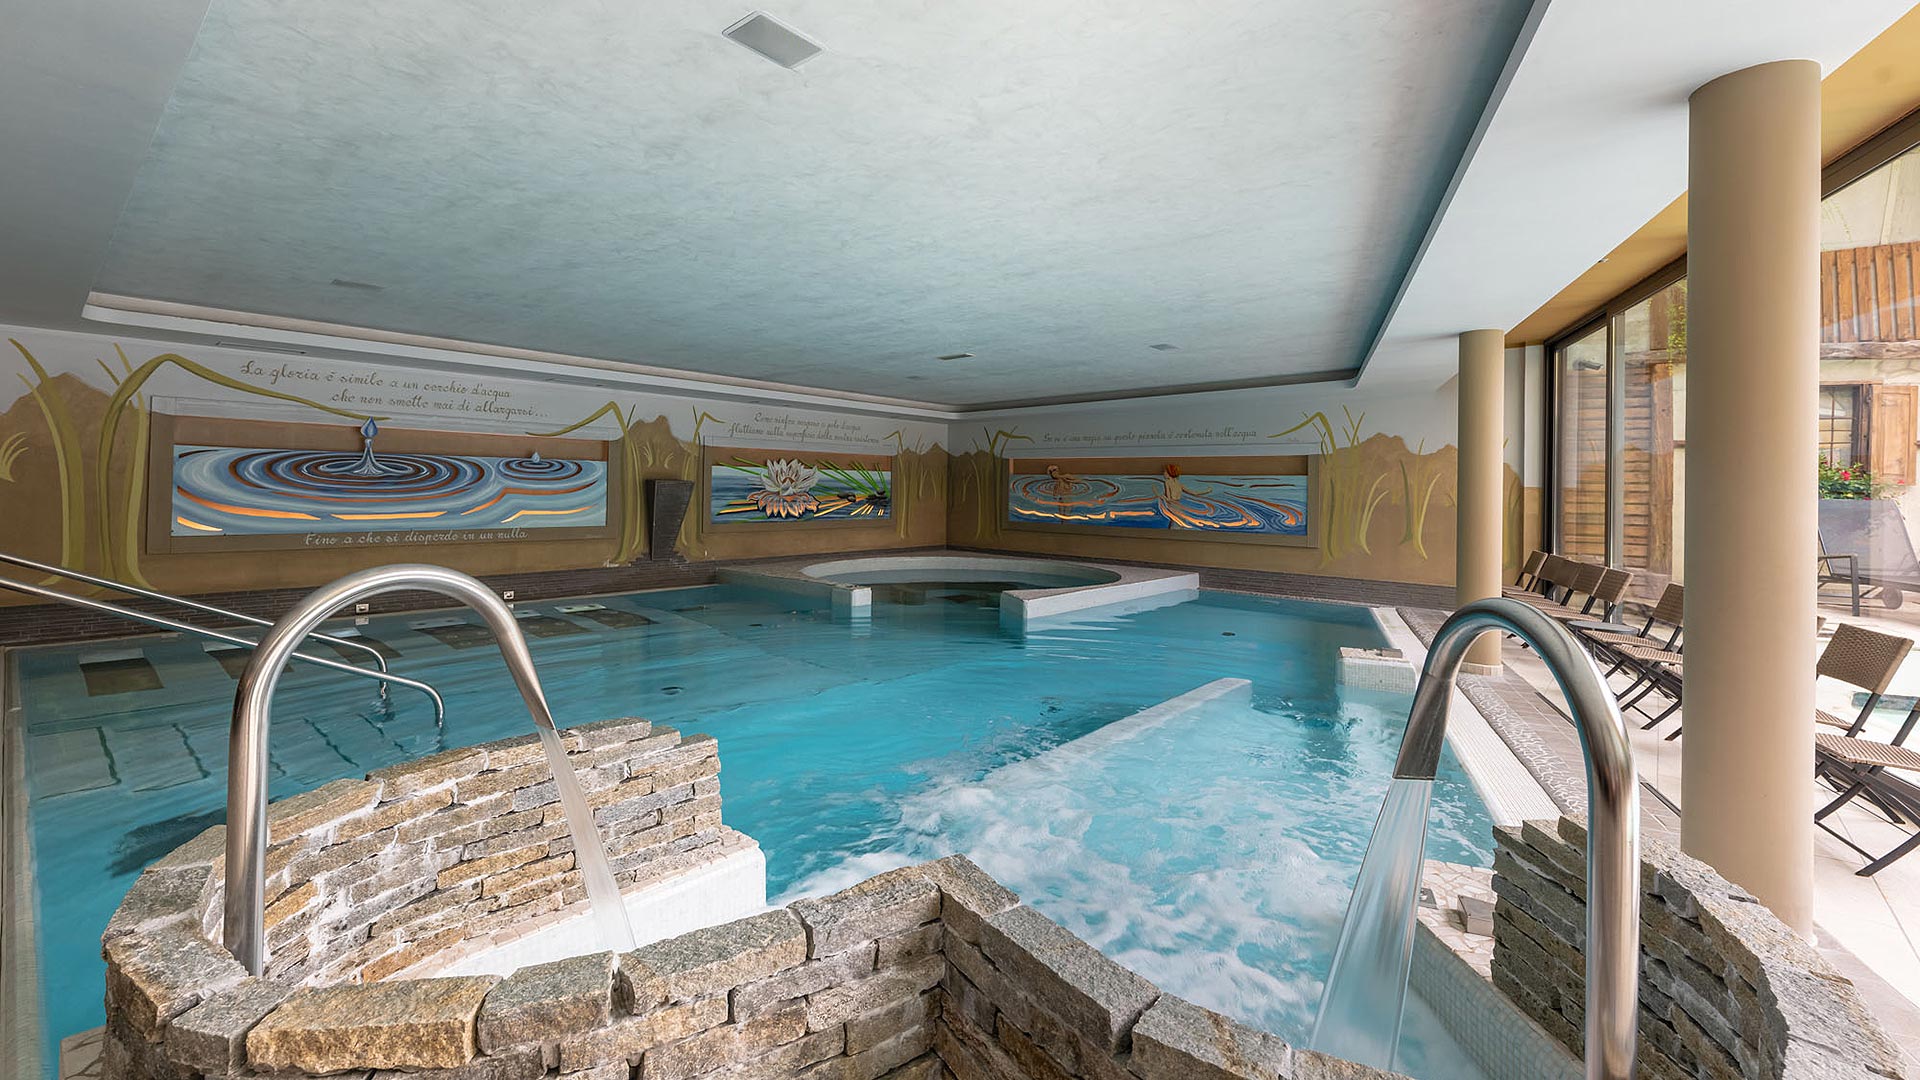 Das Family Hotel mit SPA im Trentino verfügt über ein großes beheiztes Hallenbad, Hydromassage und Wellness-Pfade.